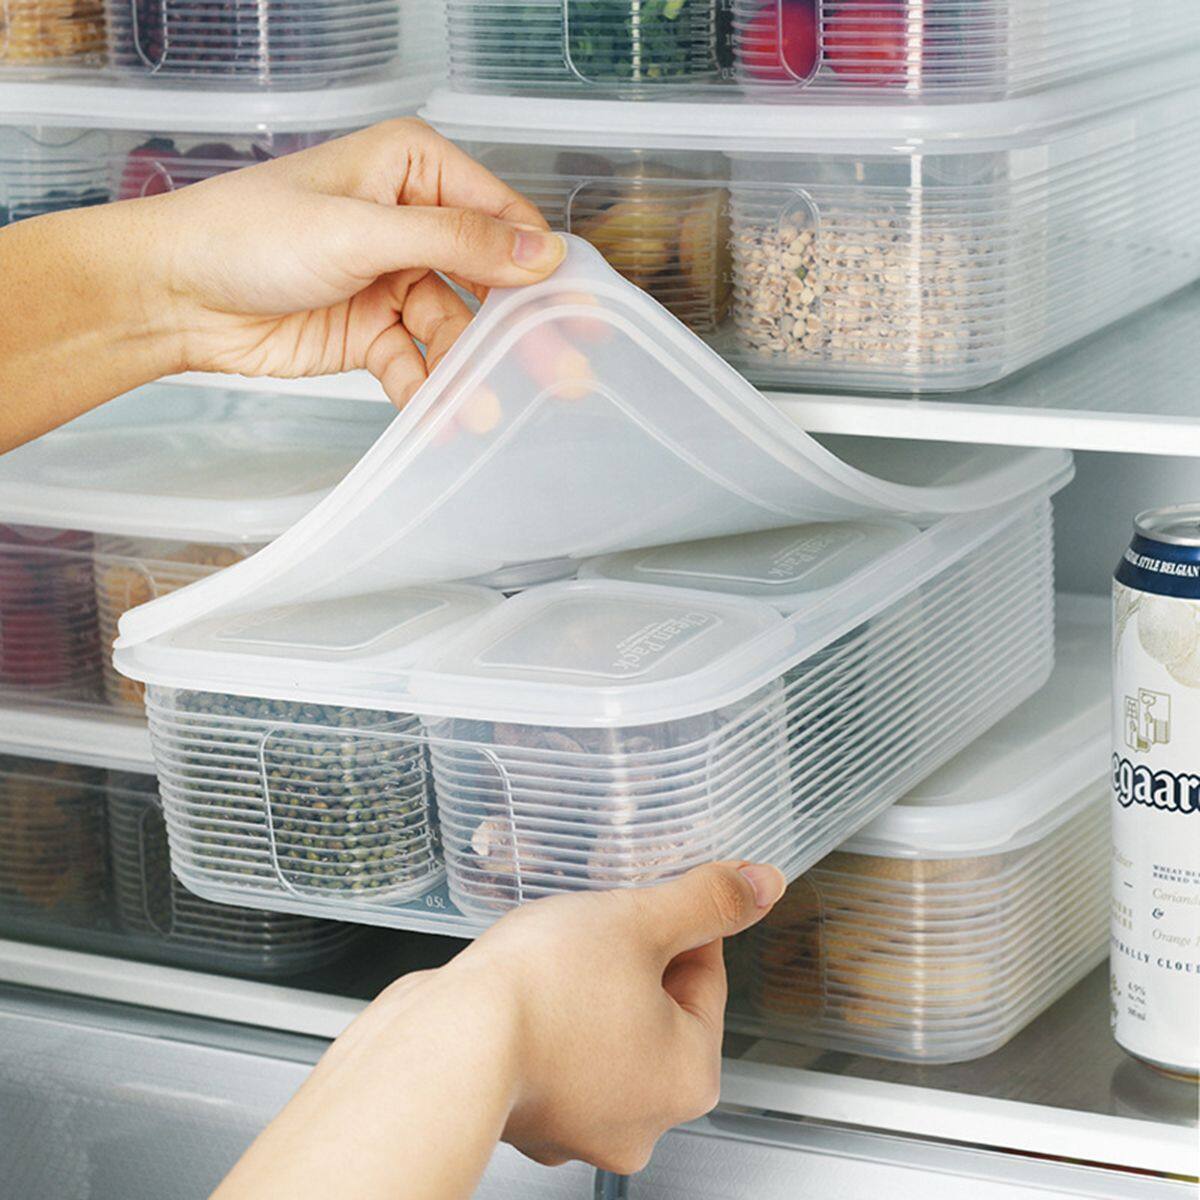 Cách sắp xếp đồ hộp trong tủ đựng thức ăn để chúng thực sự dễ tìm - Ảnh 3.